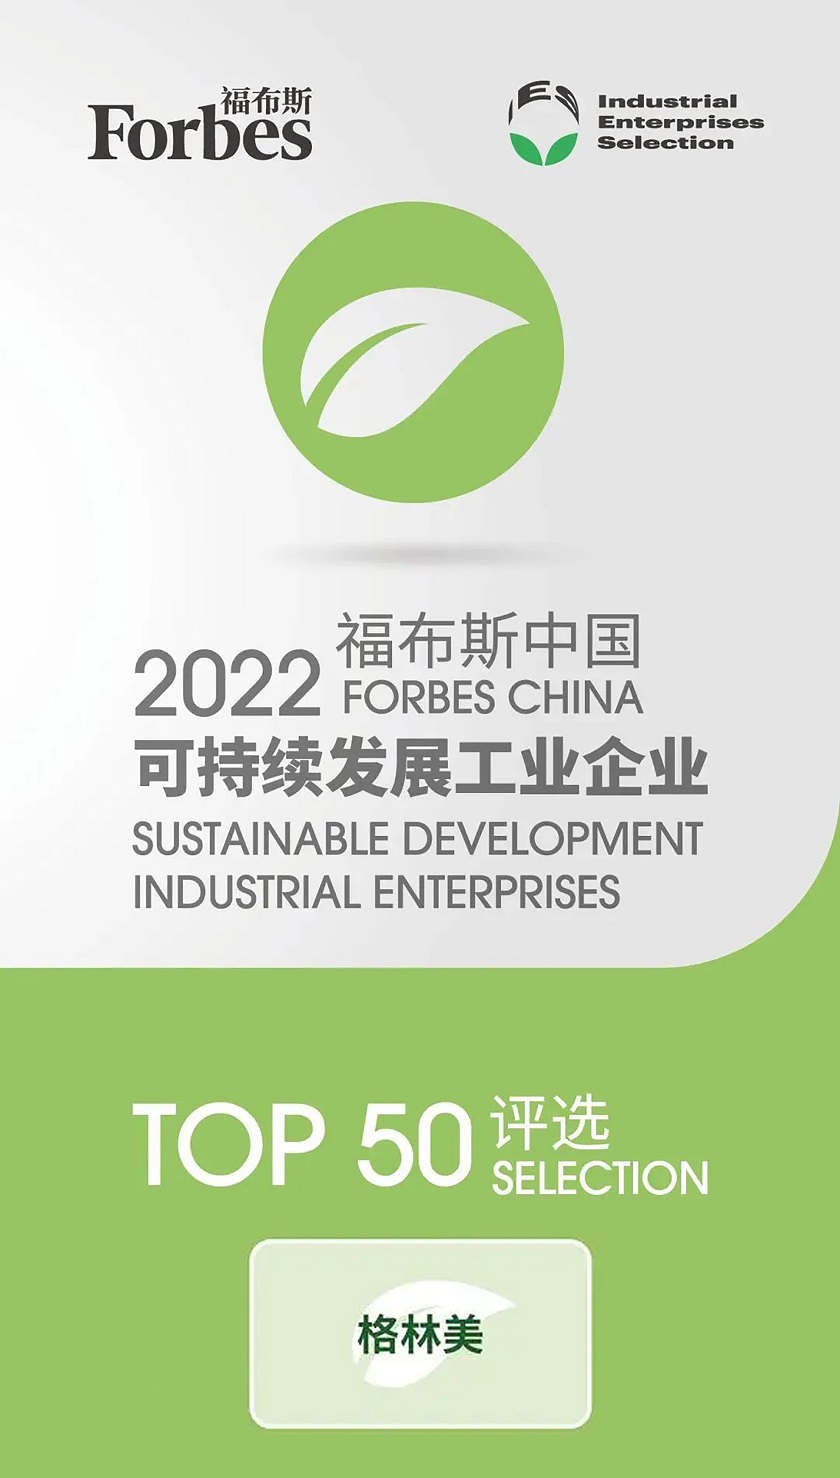 4、2022福布斯中国可持续发展工业企业TOP50.jpg